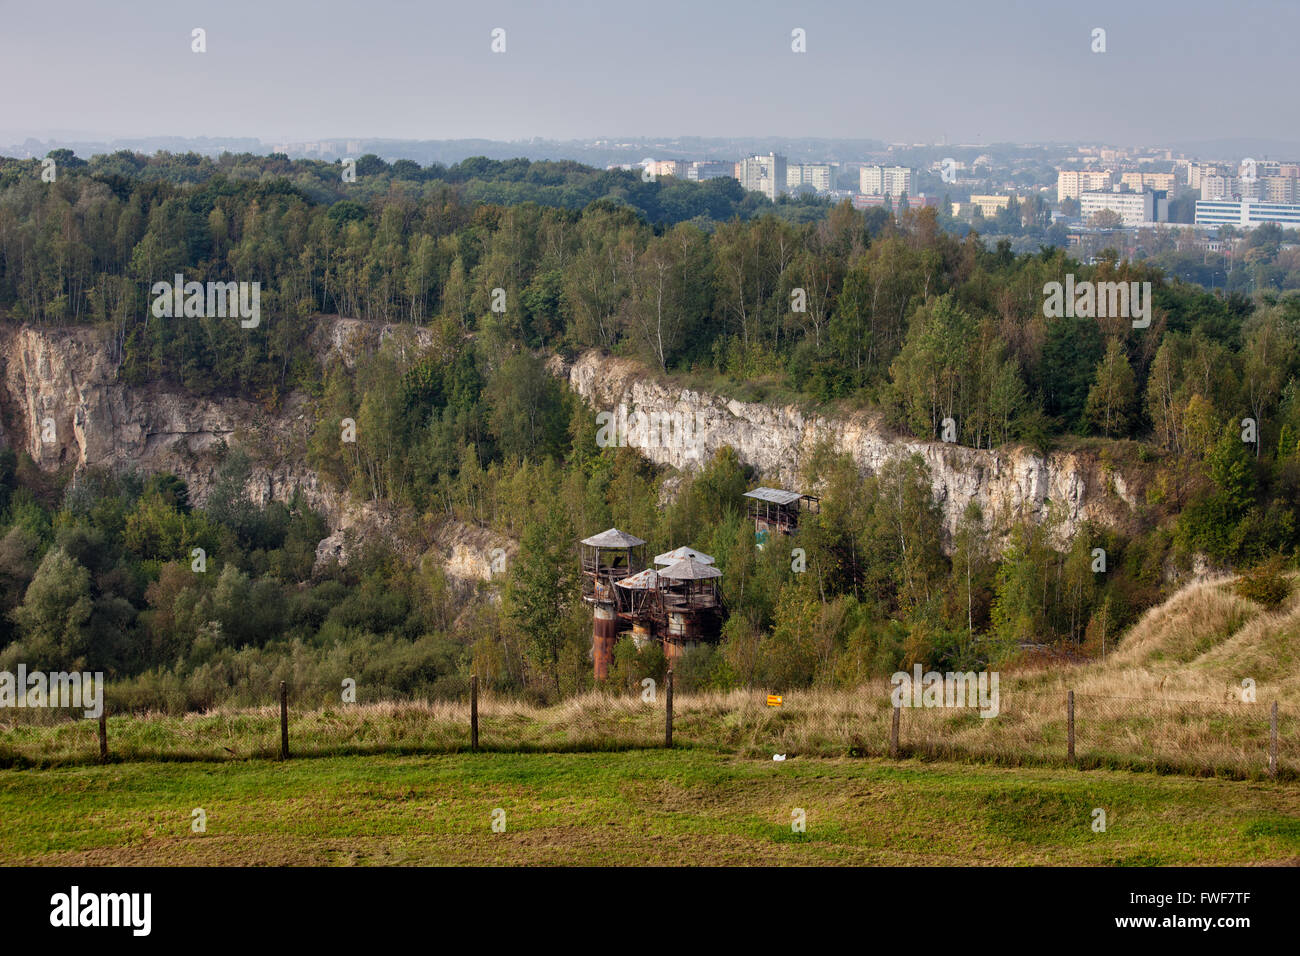 Liban cantera con acantilados de piedra caliza jurásica, oxidados y viejos edificios industriales en Cracovia, Polonia Foto de stock